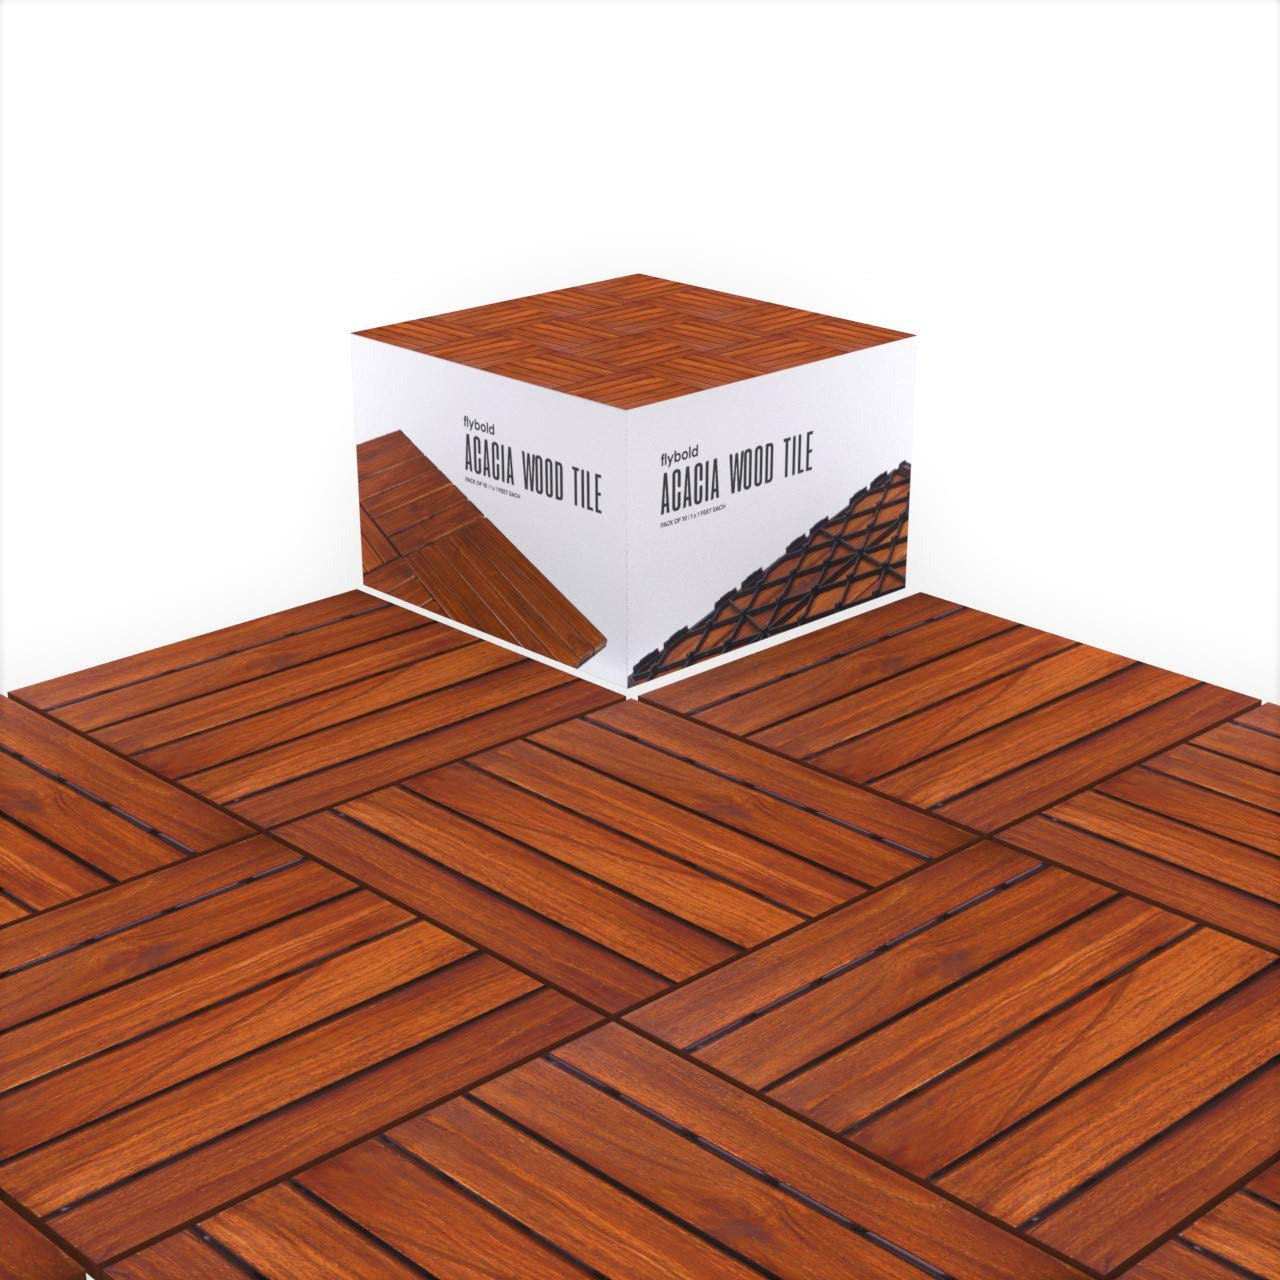 CourtyardCasualFurniture 12 x 12 Wood Interlocking Deck Tile in Teak &  Reviews